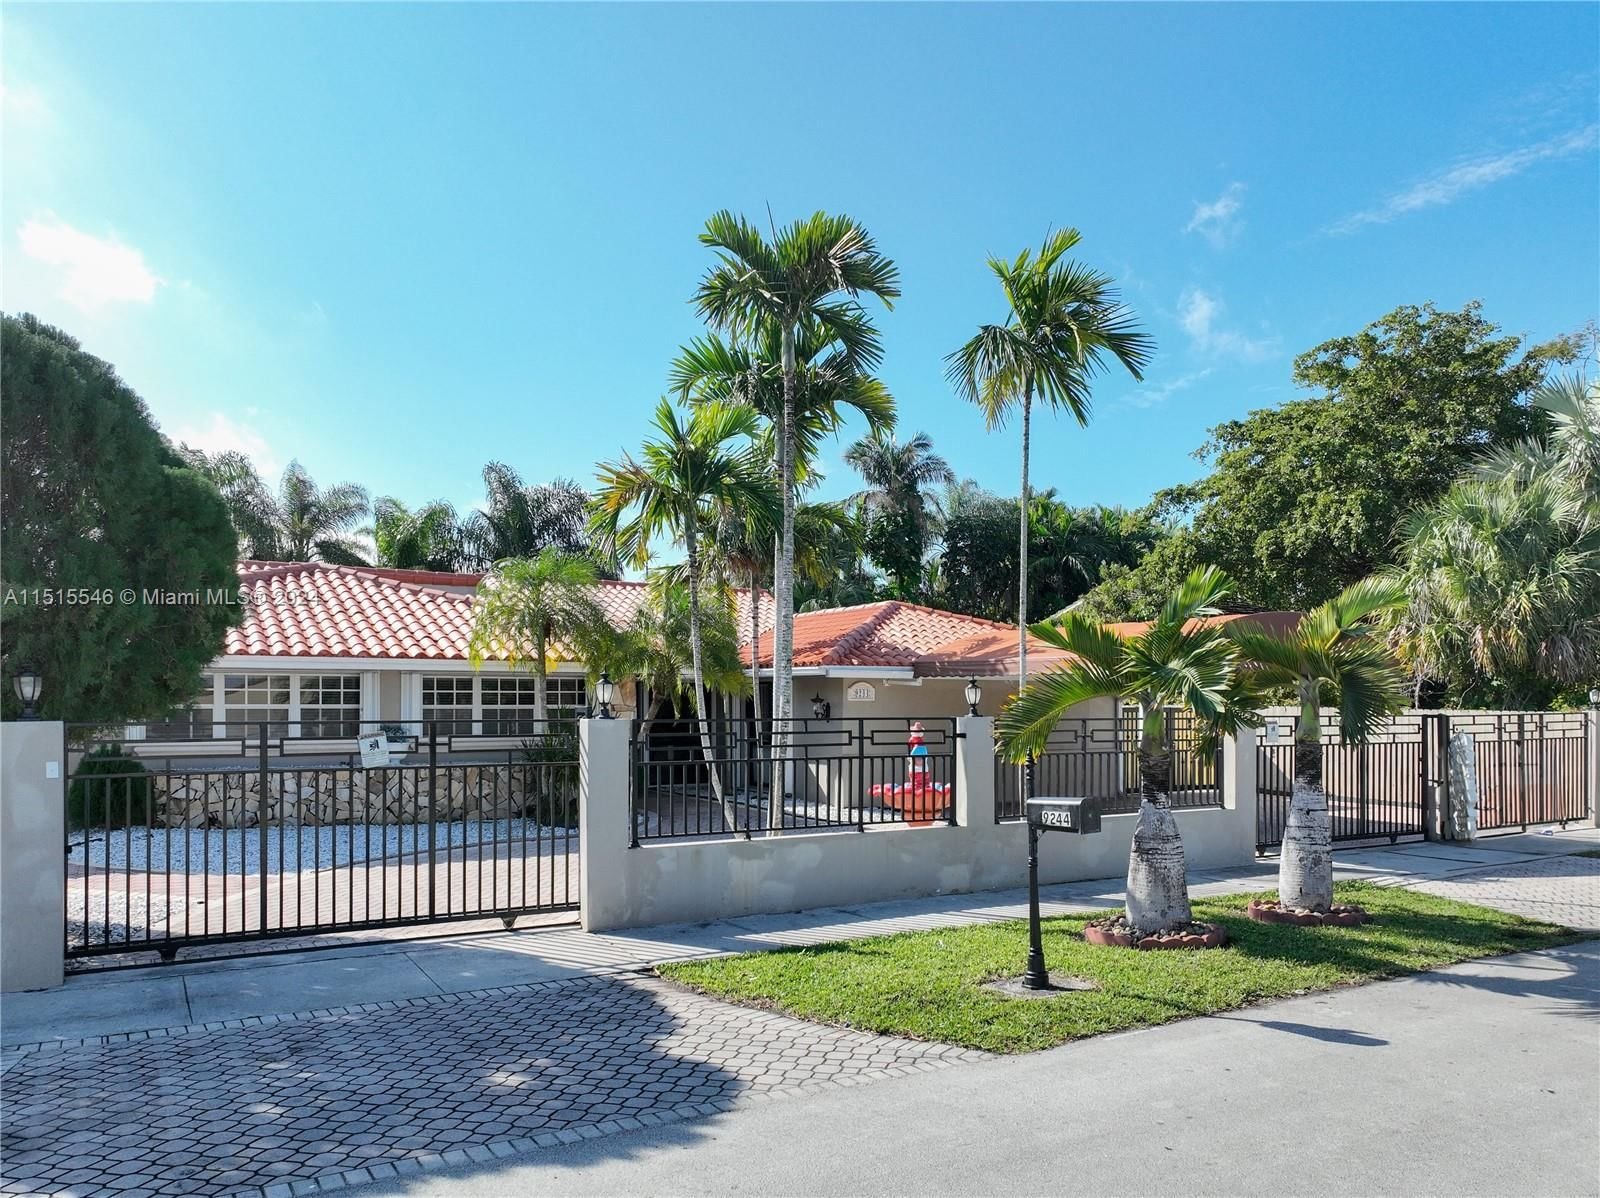 Real estate property located at 9244 9th Ter, Miami-Dade County, POINCIANA ESTATES SEC 2, Miami, FL